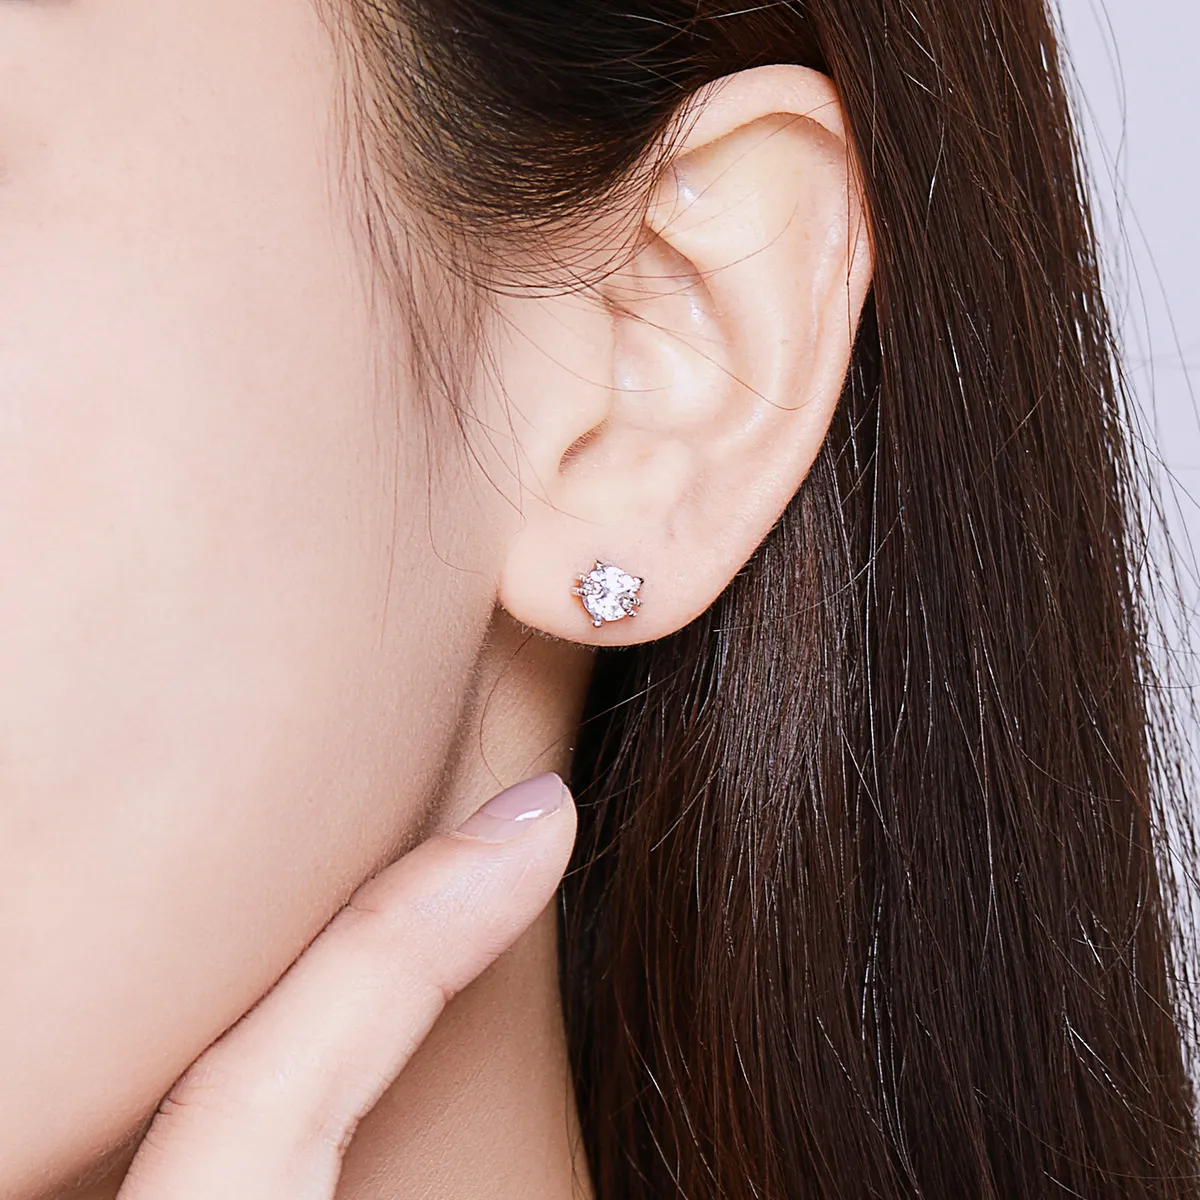 Pandora Style Silver Cute Kitten Stud Earrings - BSE205